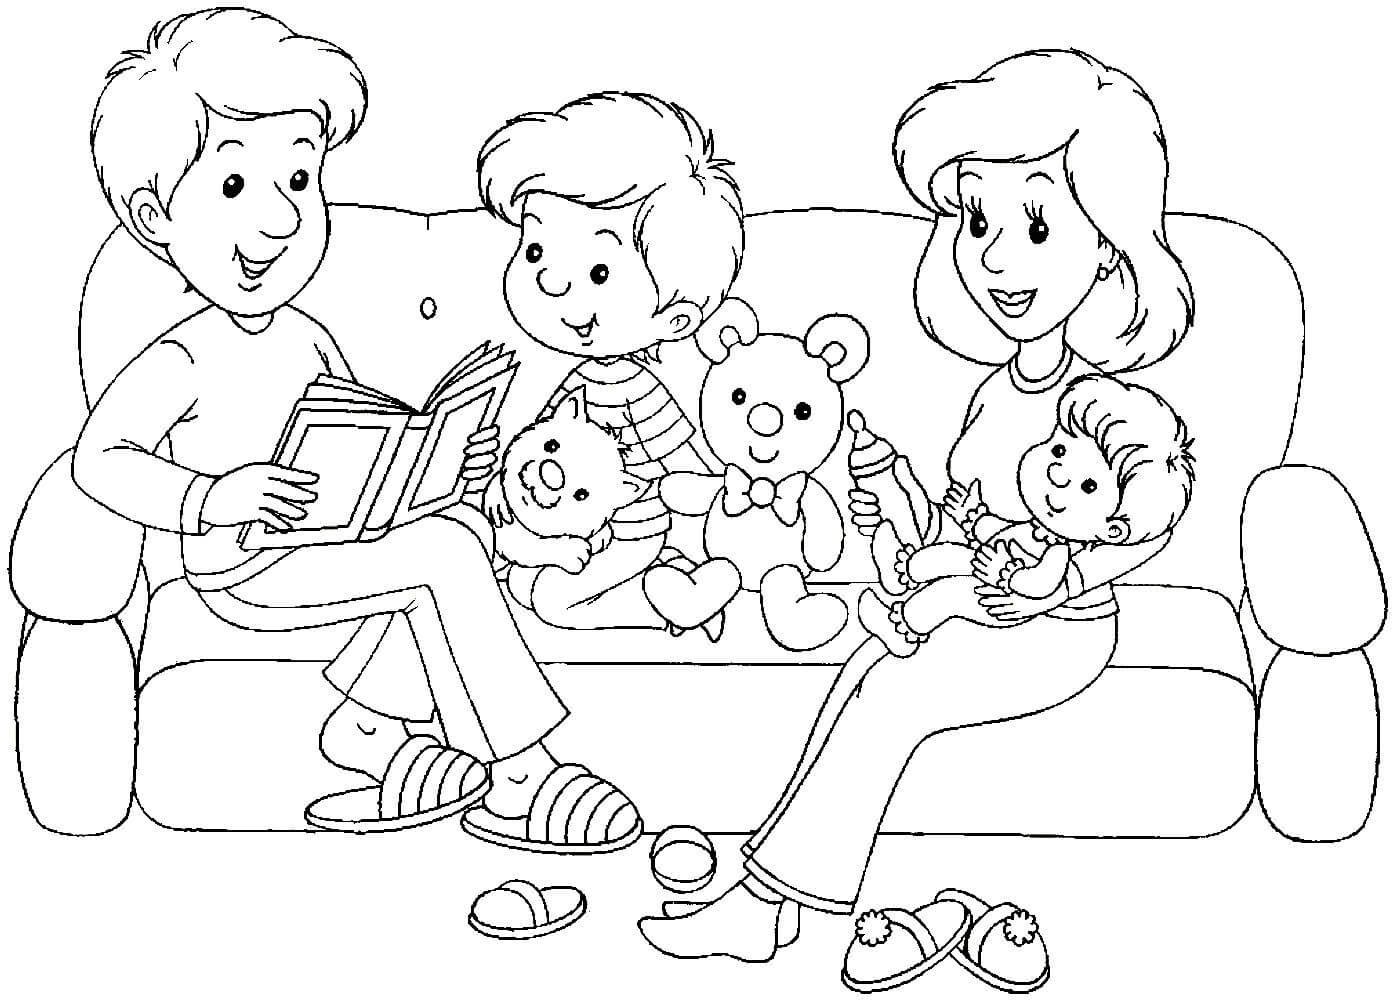 Читаем детские рисунки семья фото